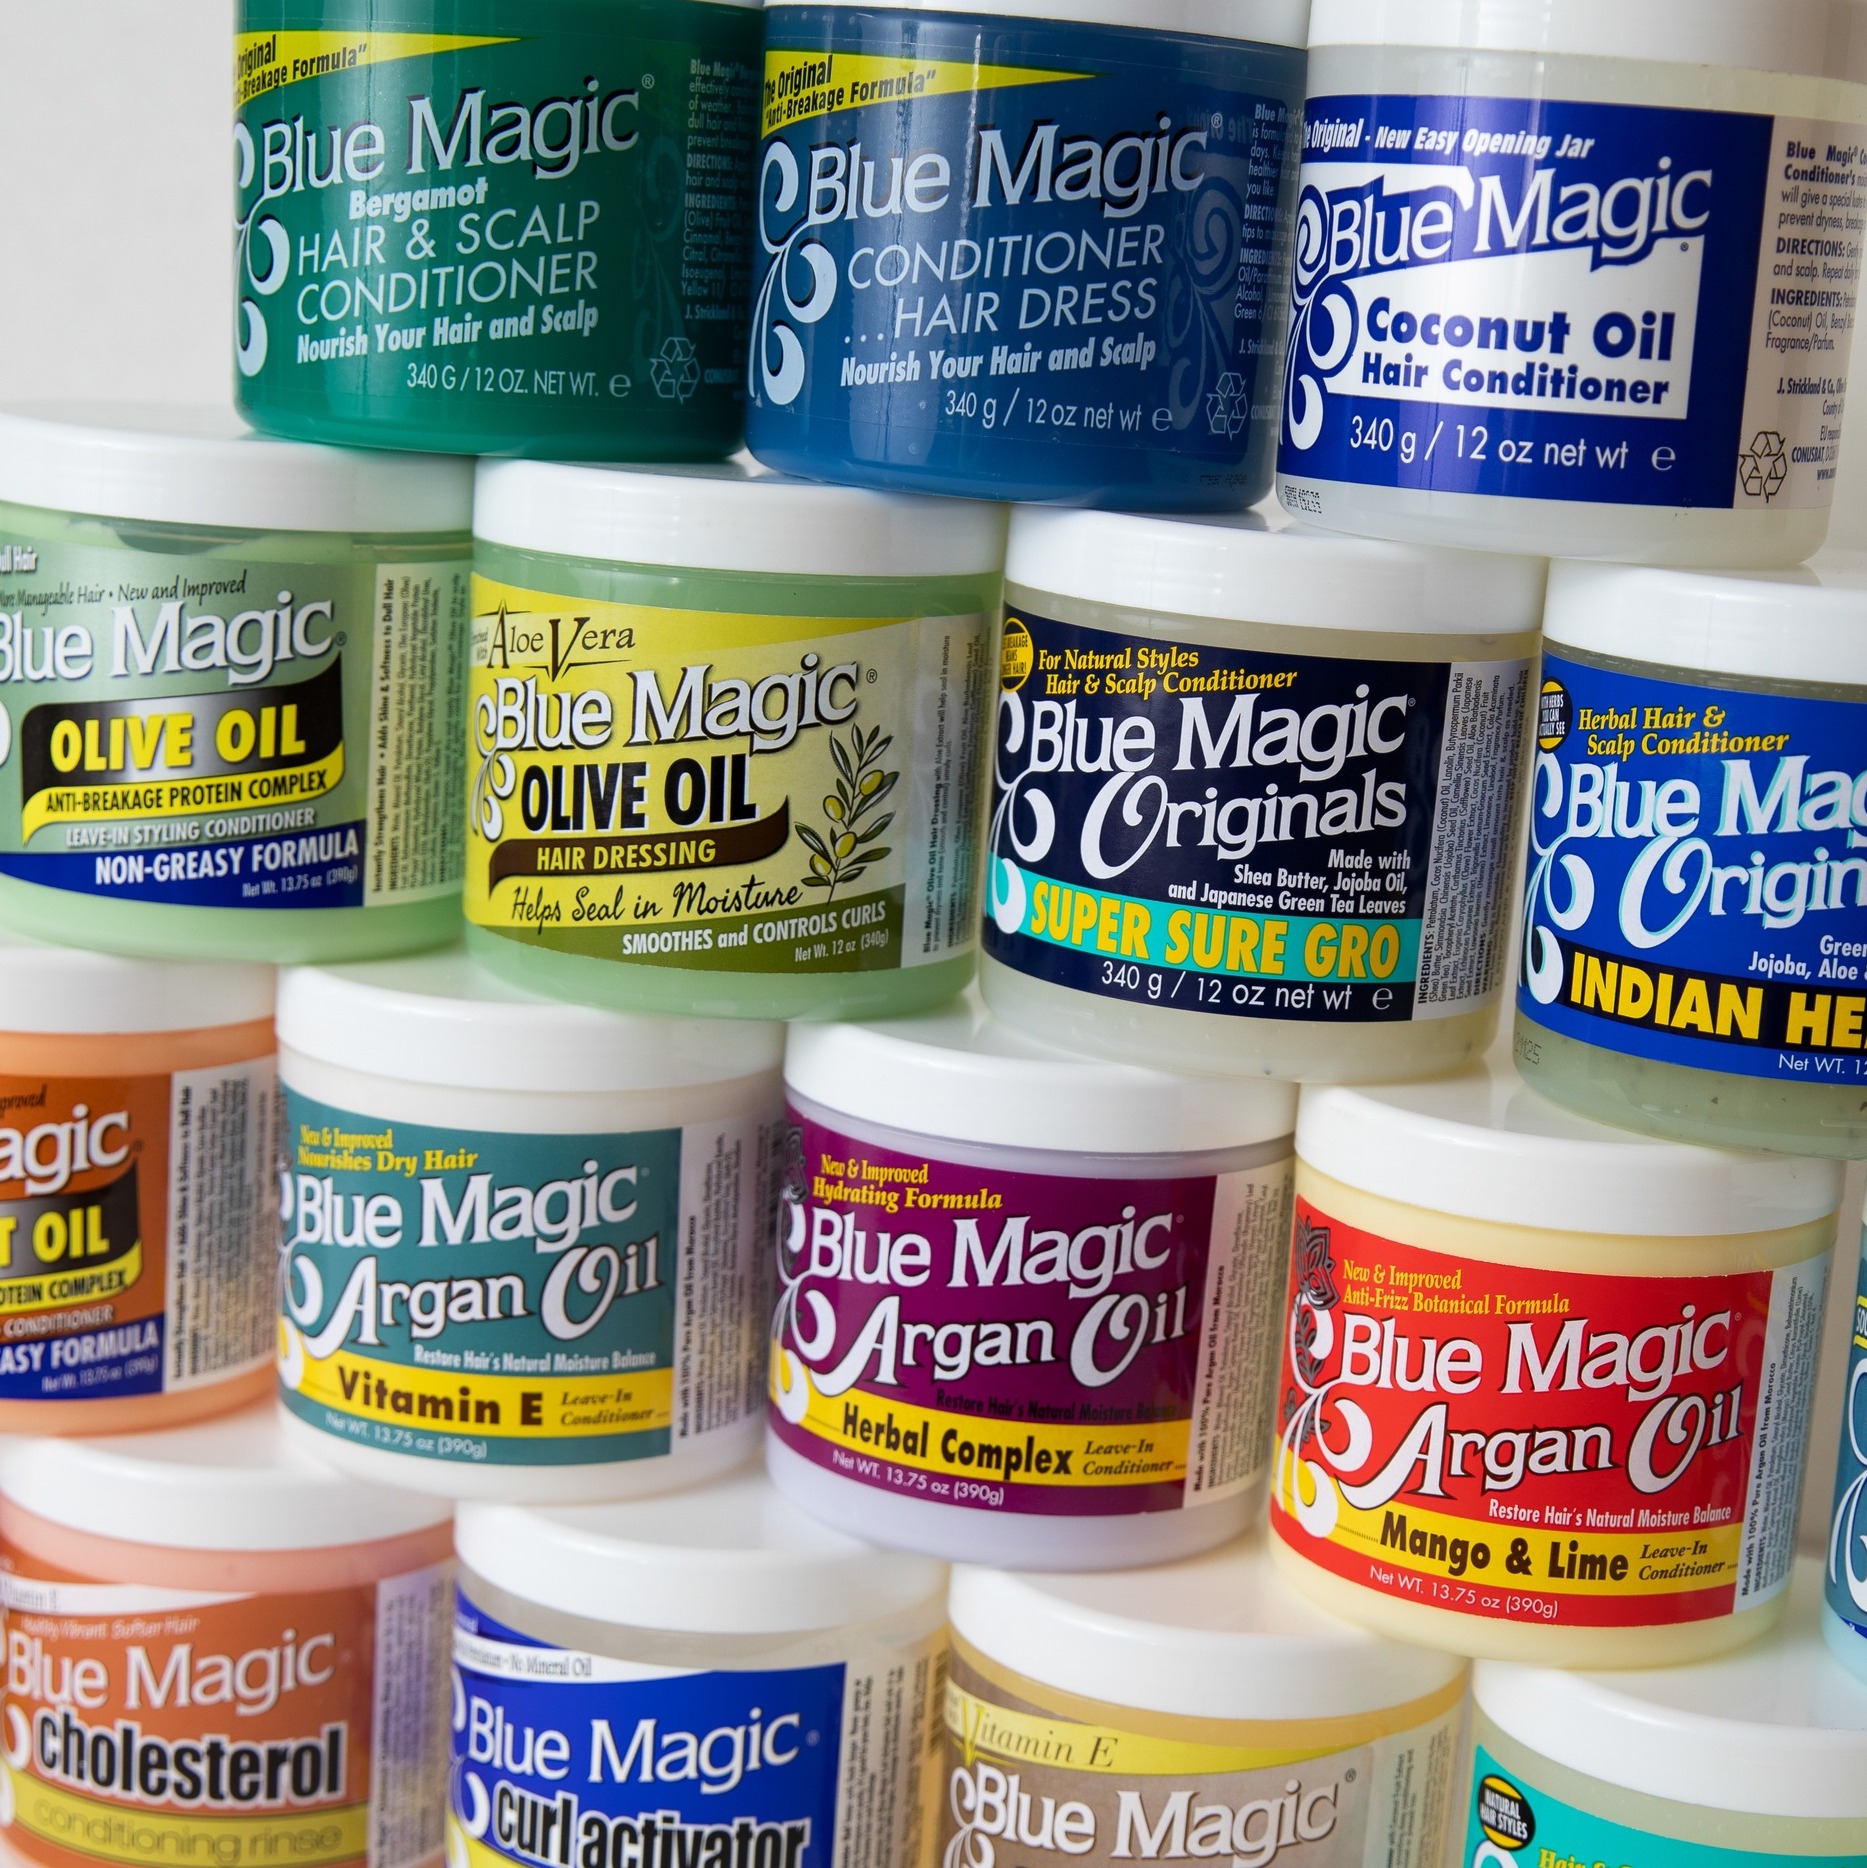 BlueMagic Products - Blue Magic